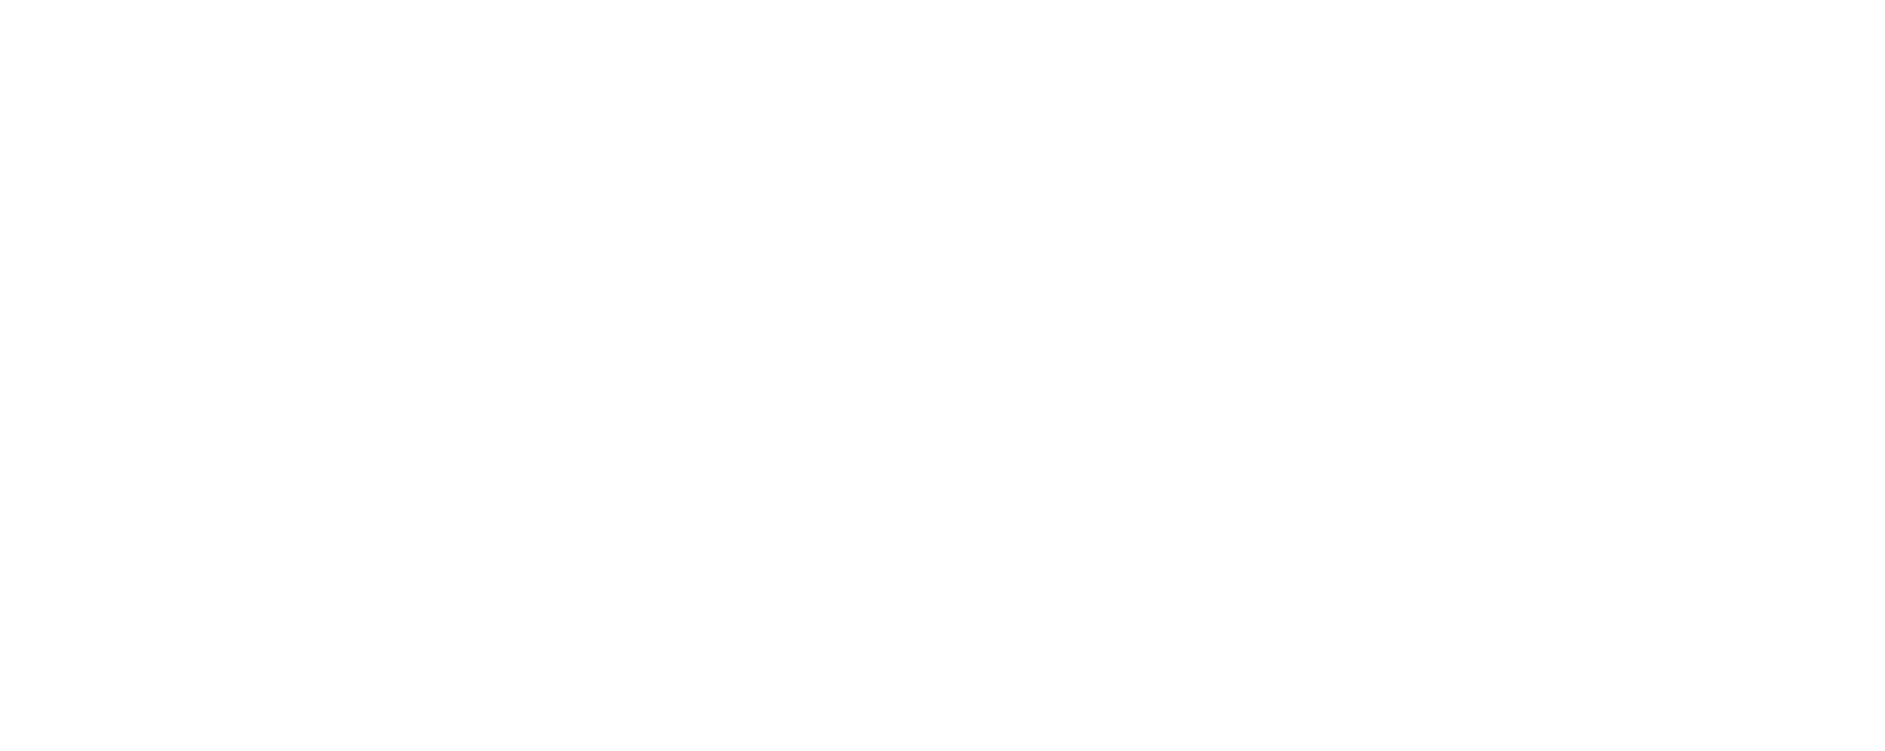 Les Balcons du Dauphiné